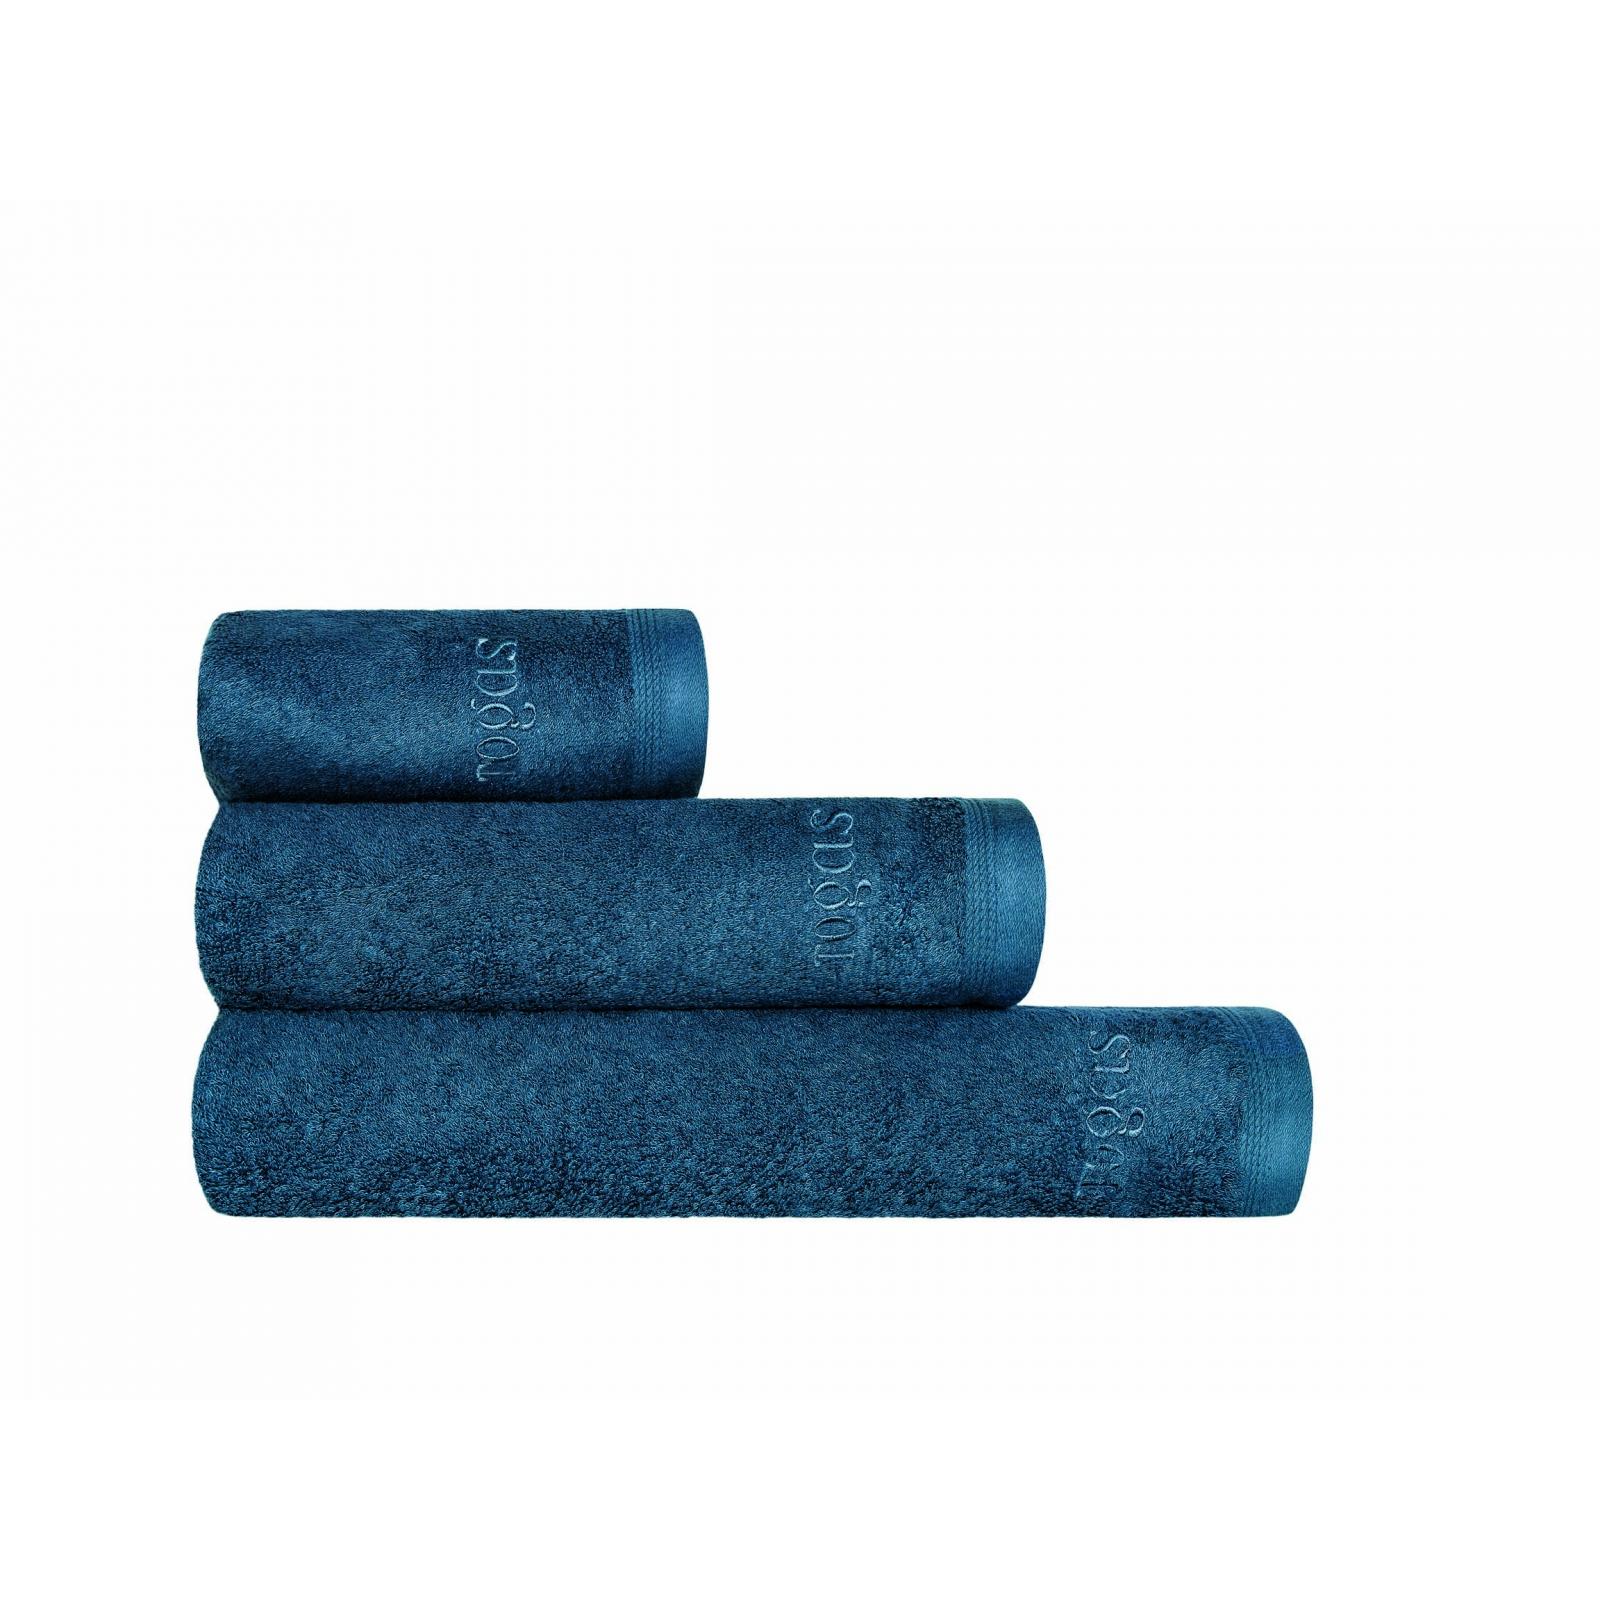 Полотенце Togas Пуатье темно-синее 50х100 см полотенце togas пуатье темно синее 50х100 см